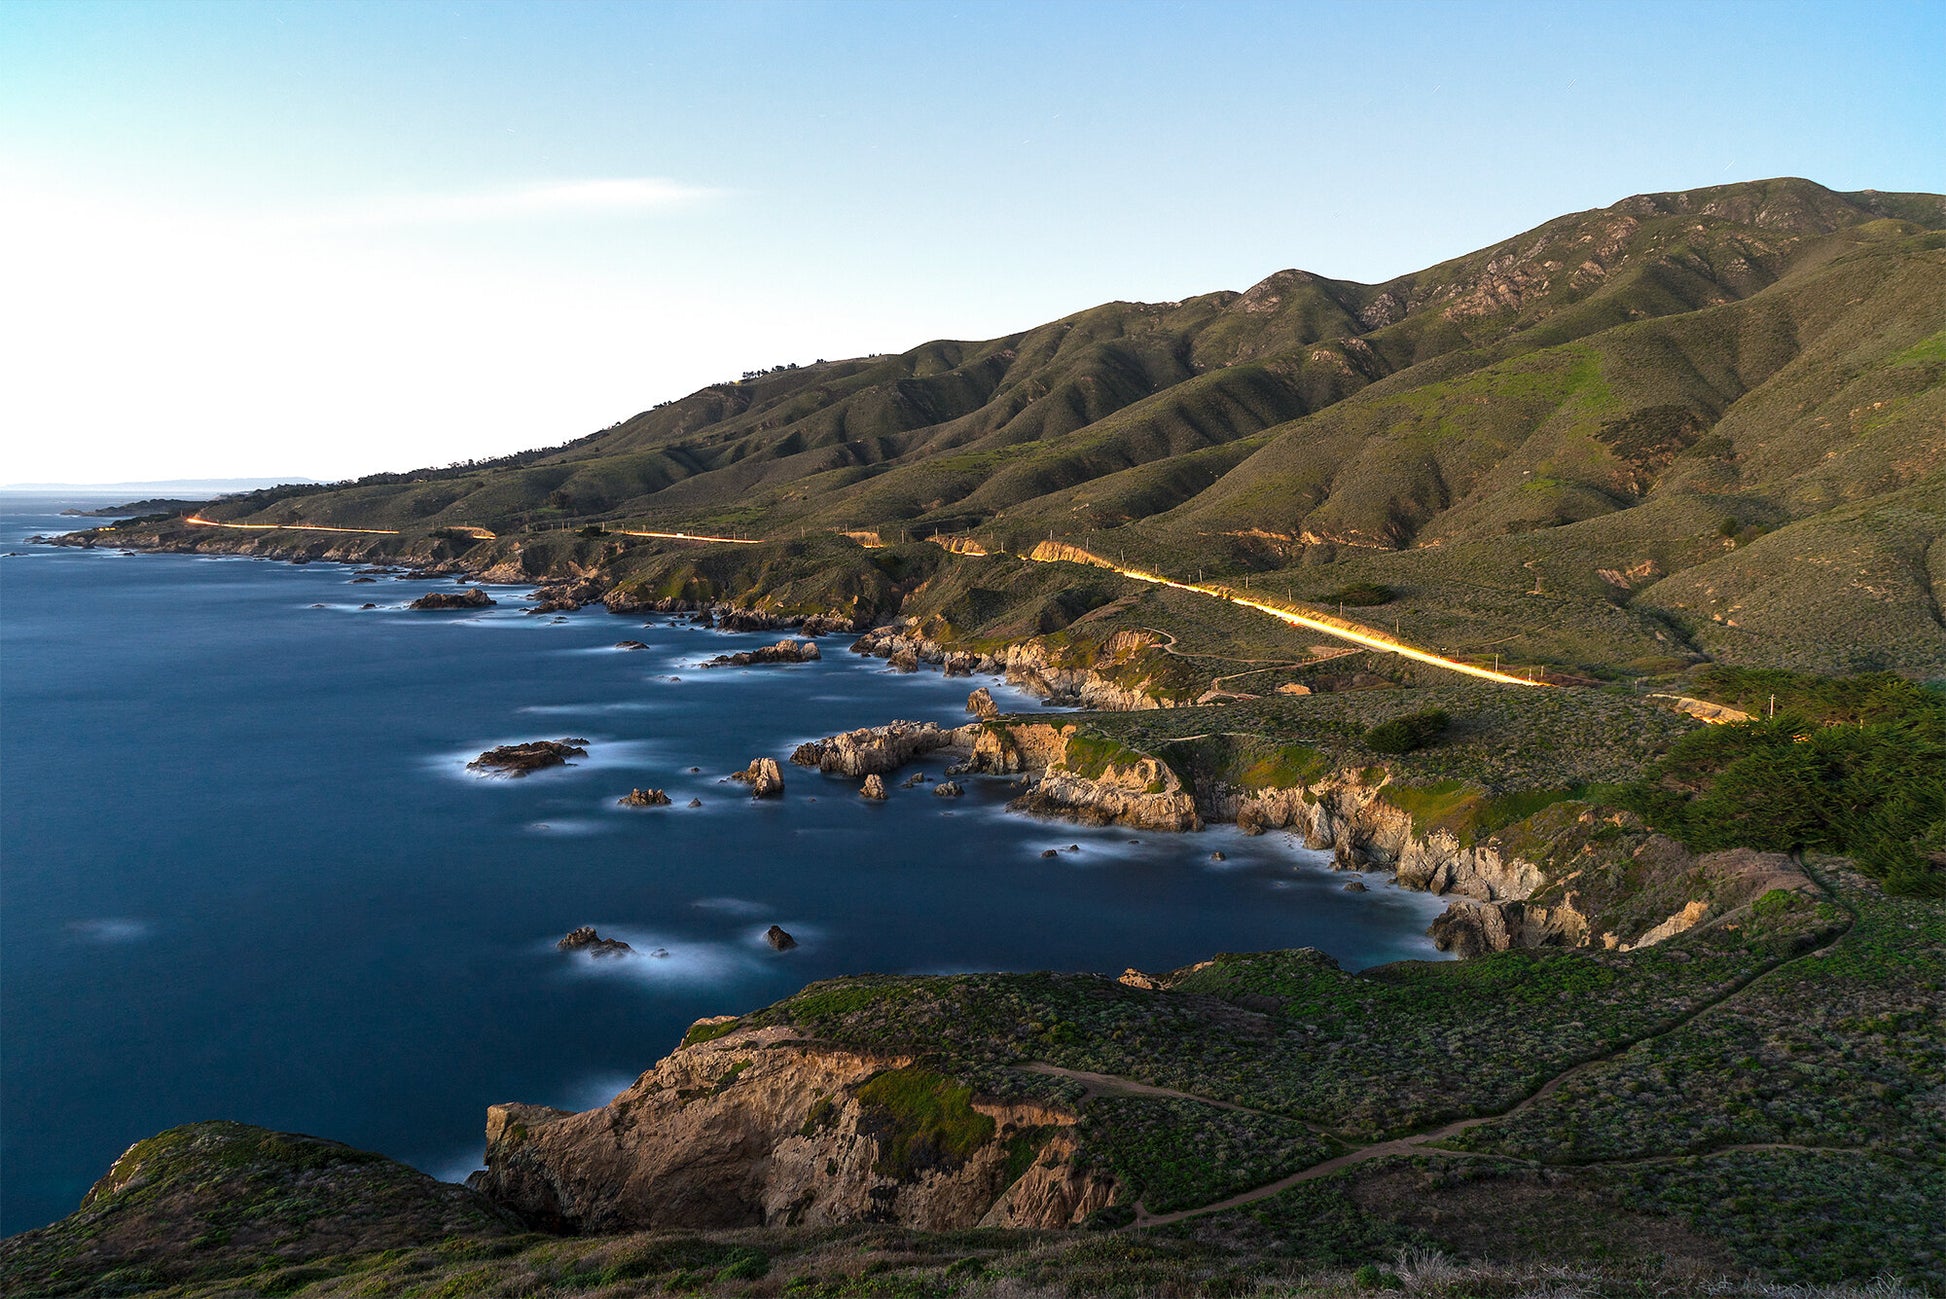 Californian Coast- A photograph by Mark McInnis.